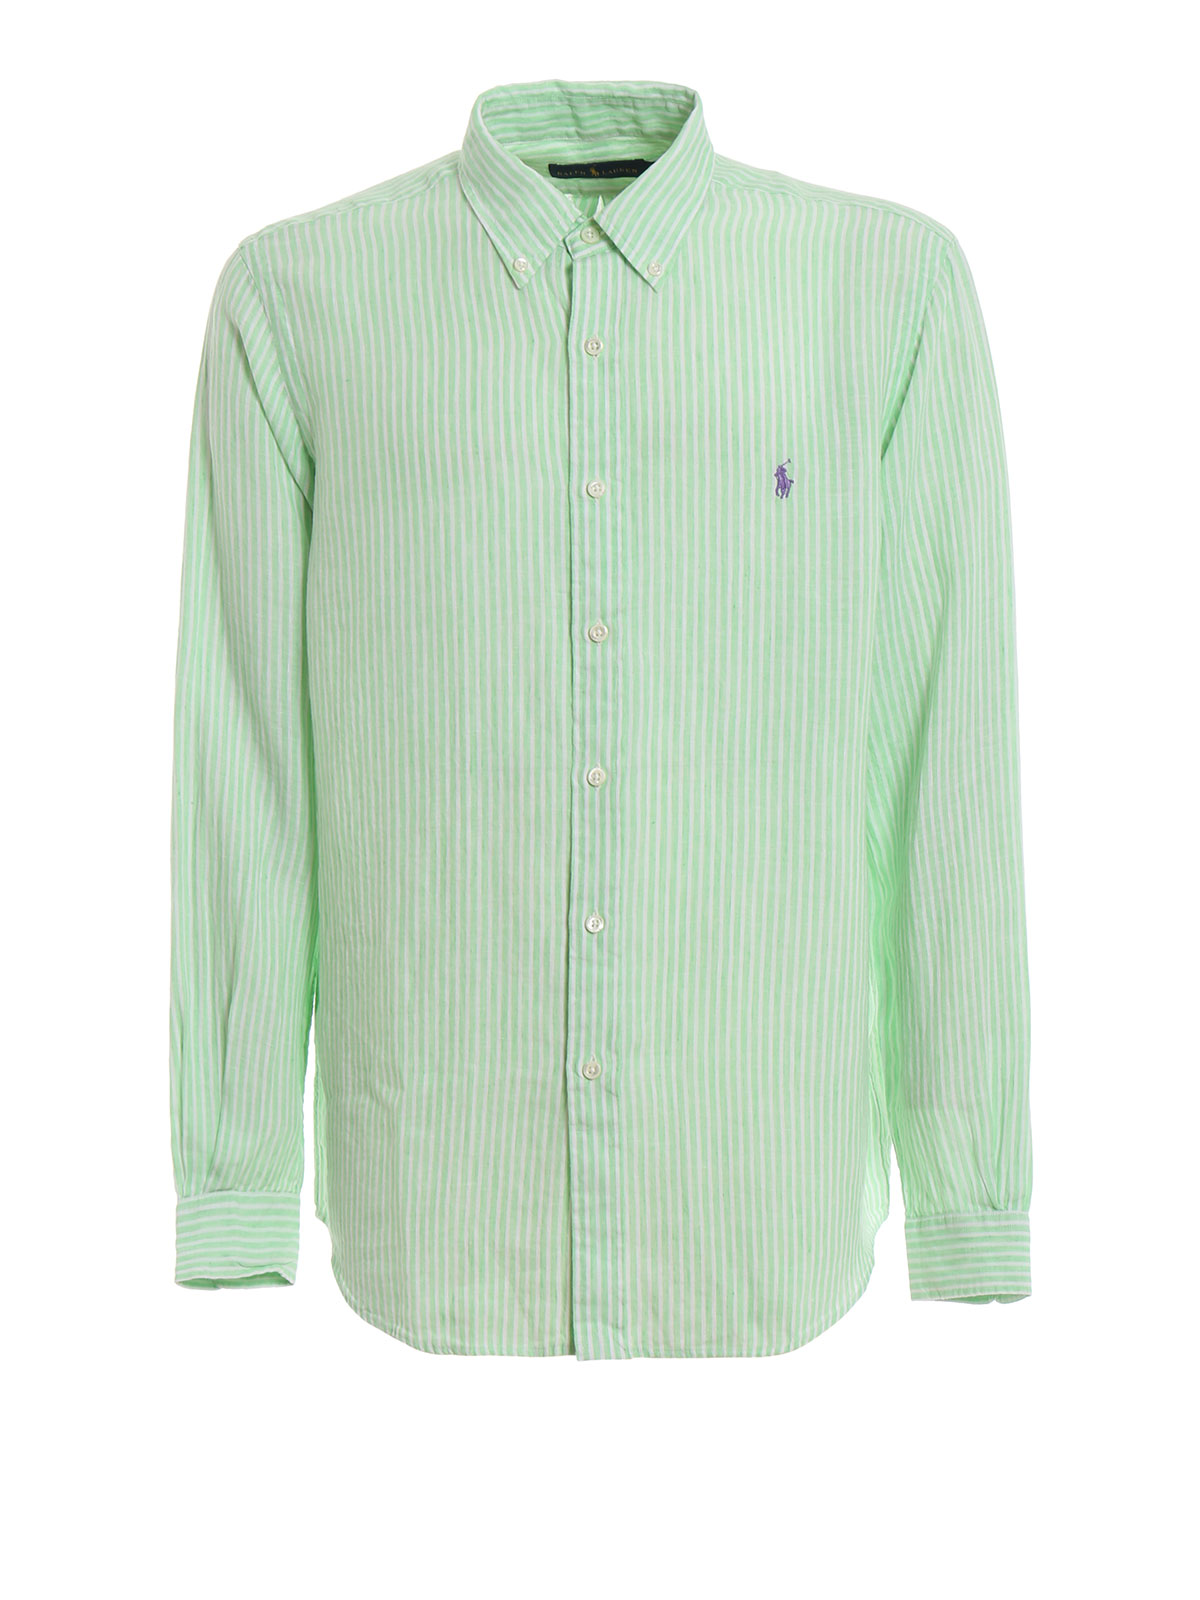 Afleiden Hoelahoep abces Shirts Polo Ralph Lauren - Mint green striped linen b/d shirt - 710740807003